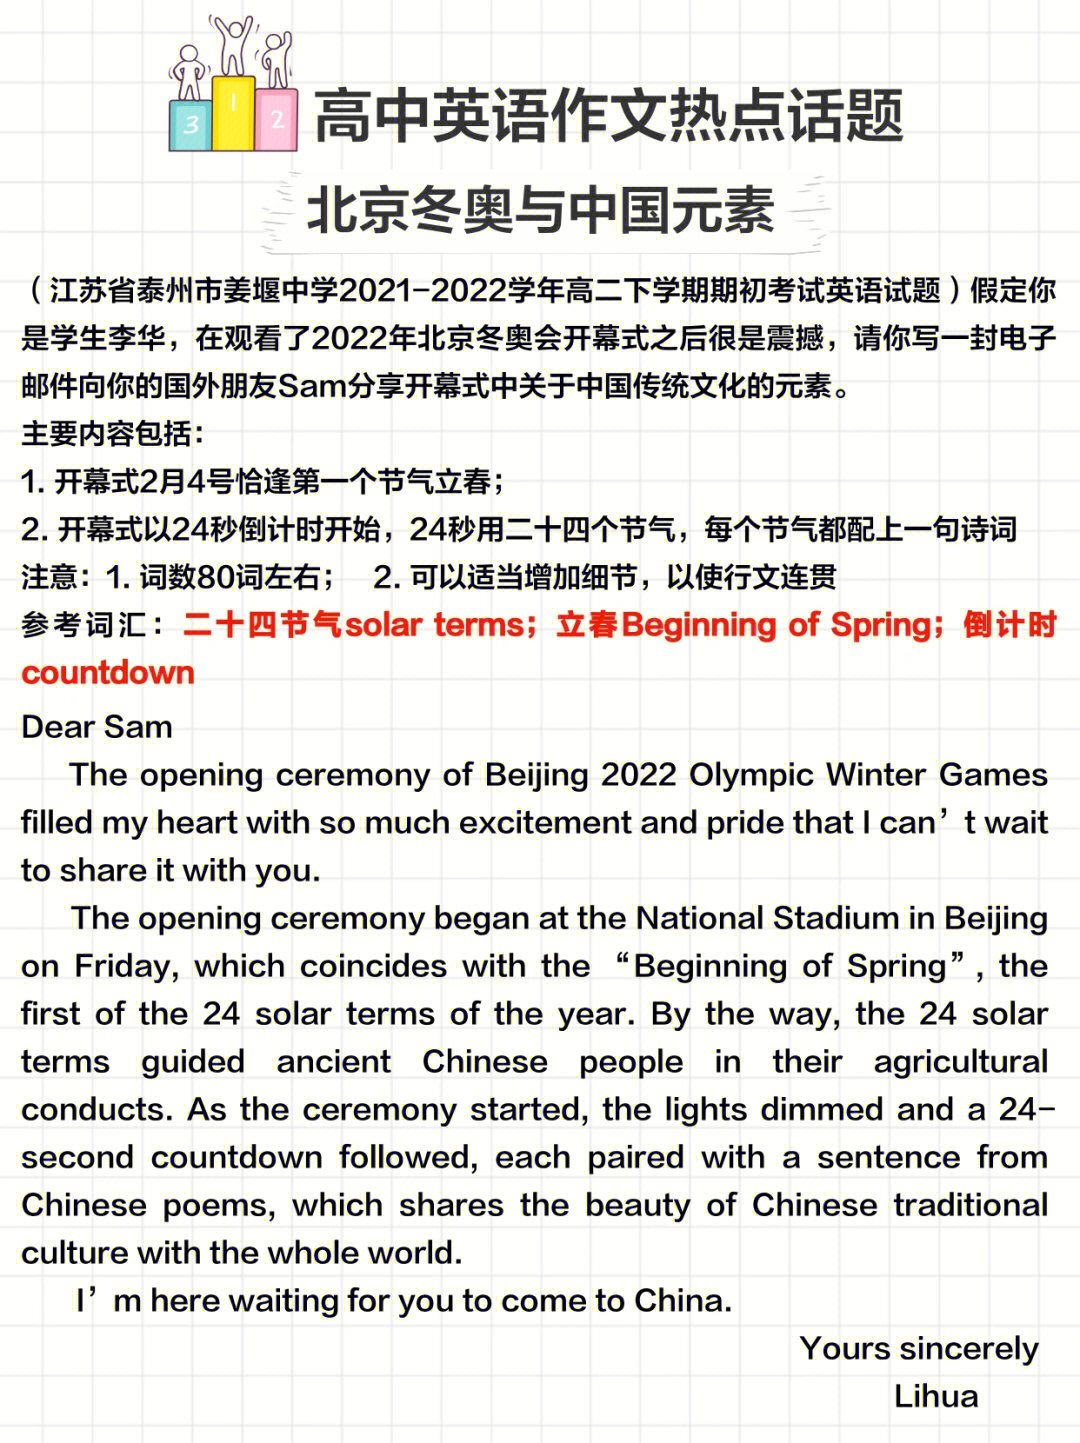 北京冬奥会英文内容图片